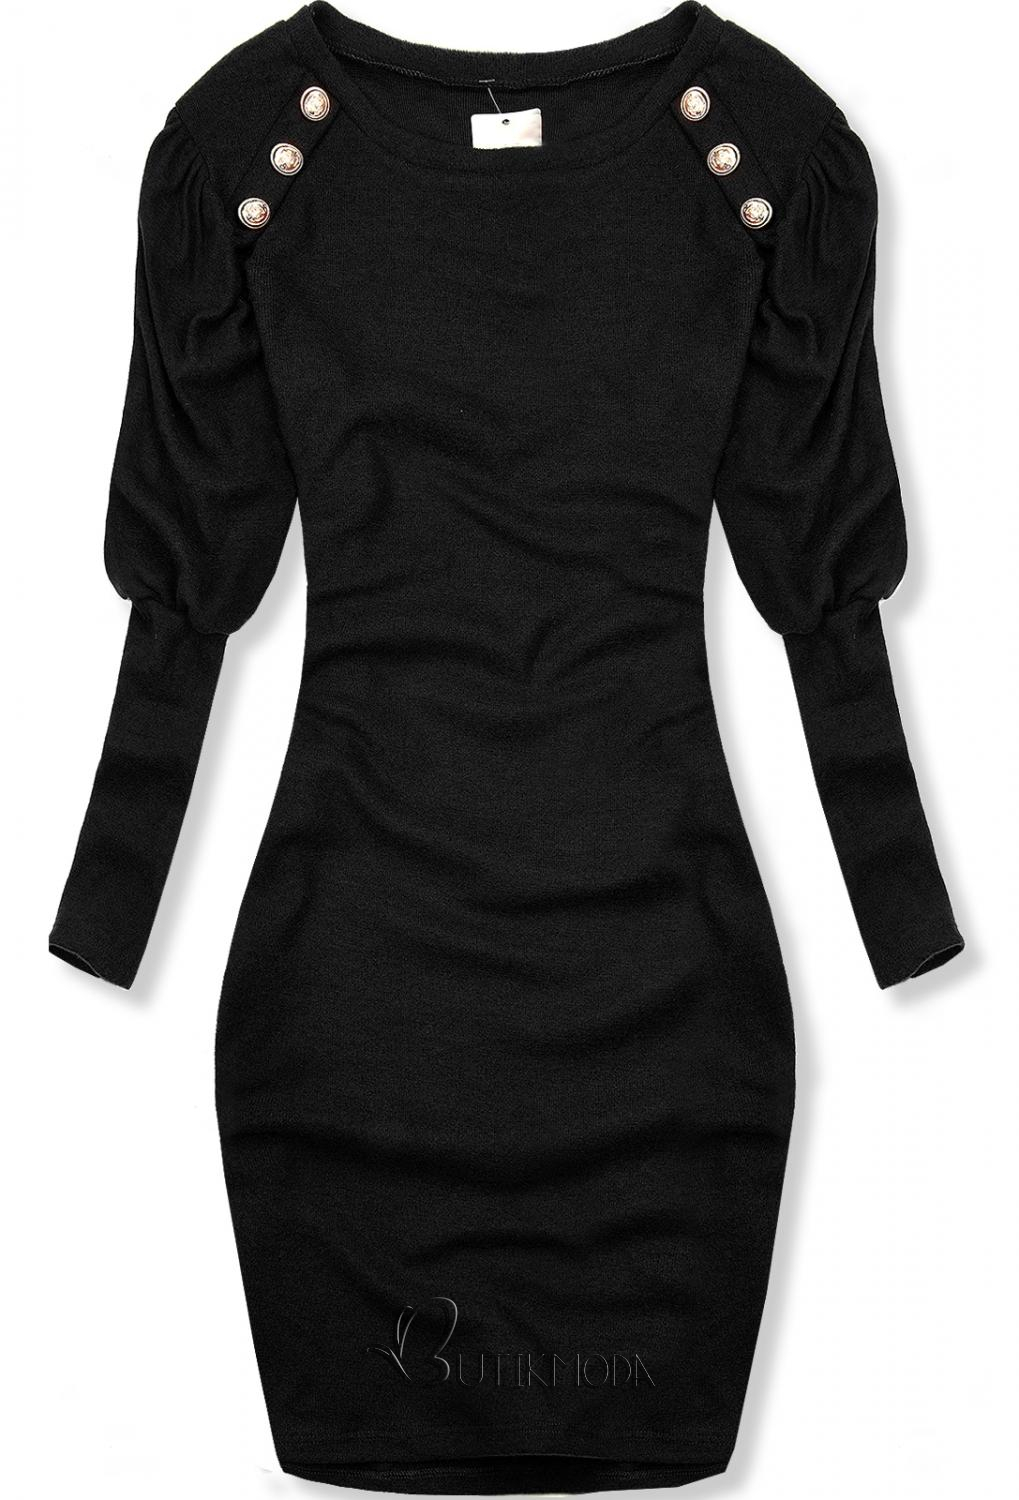 Fekete színű elegáns ruha, testhezálló fazonban